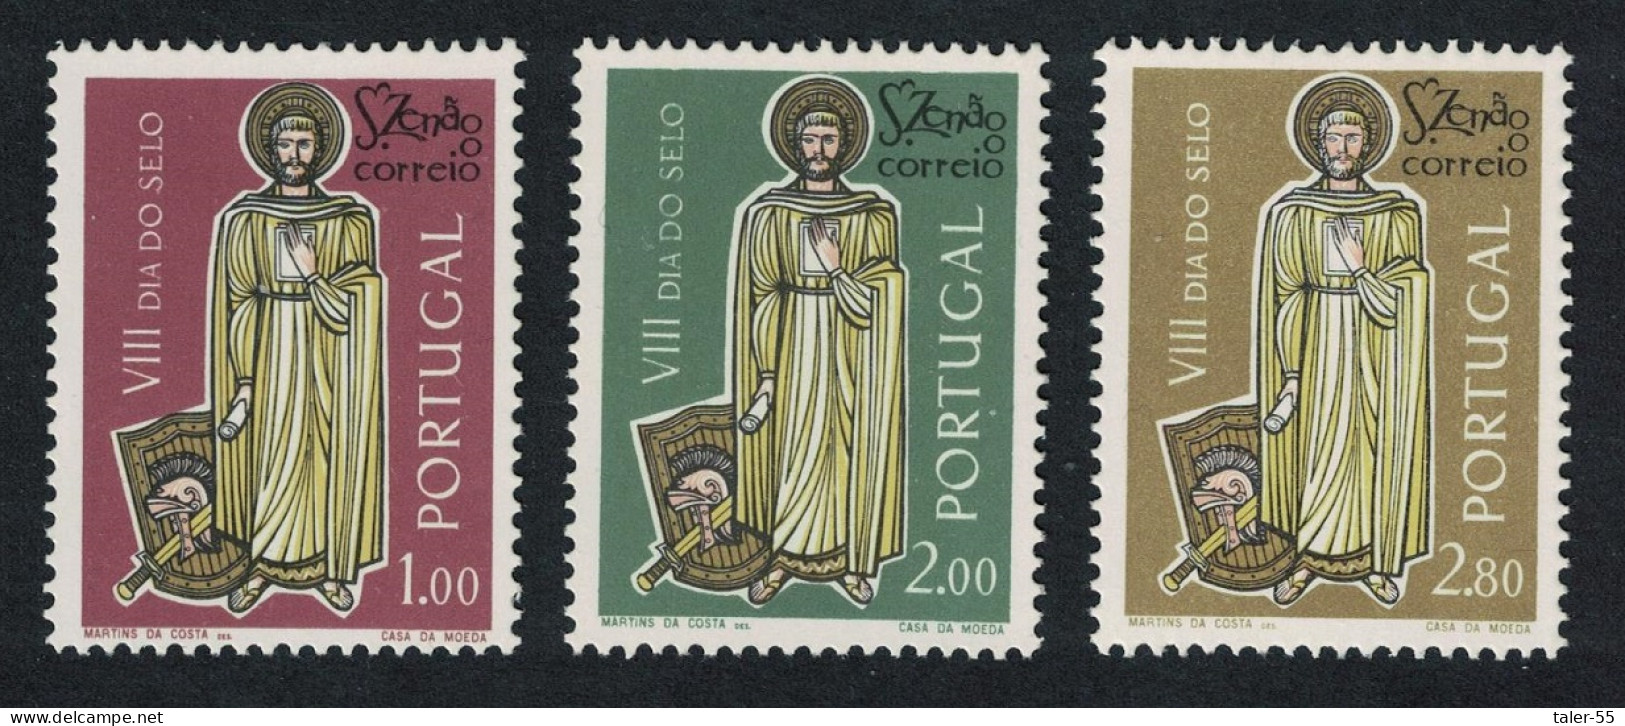 Portugal Stamp Day Saint Zenon The Courier 3v 1962 MNH SG#1216-1218 - Nuovi